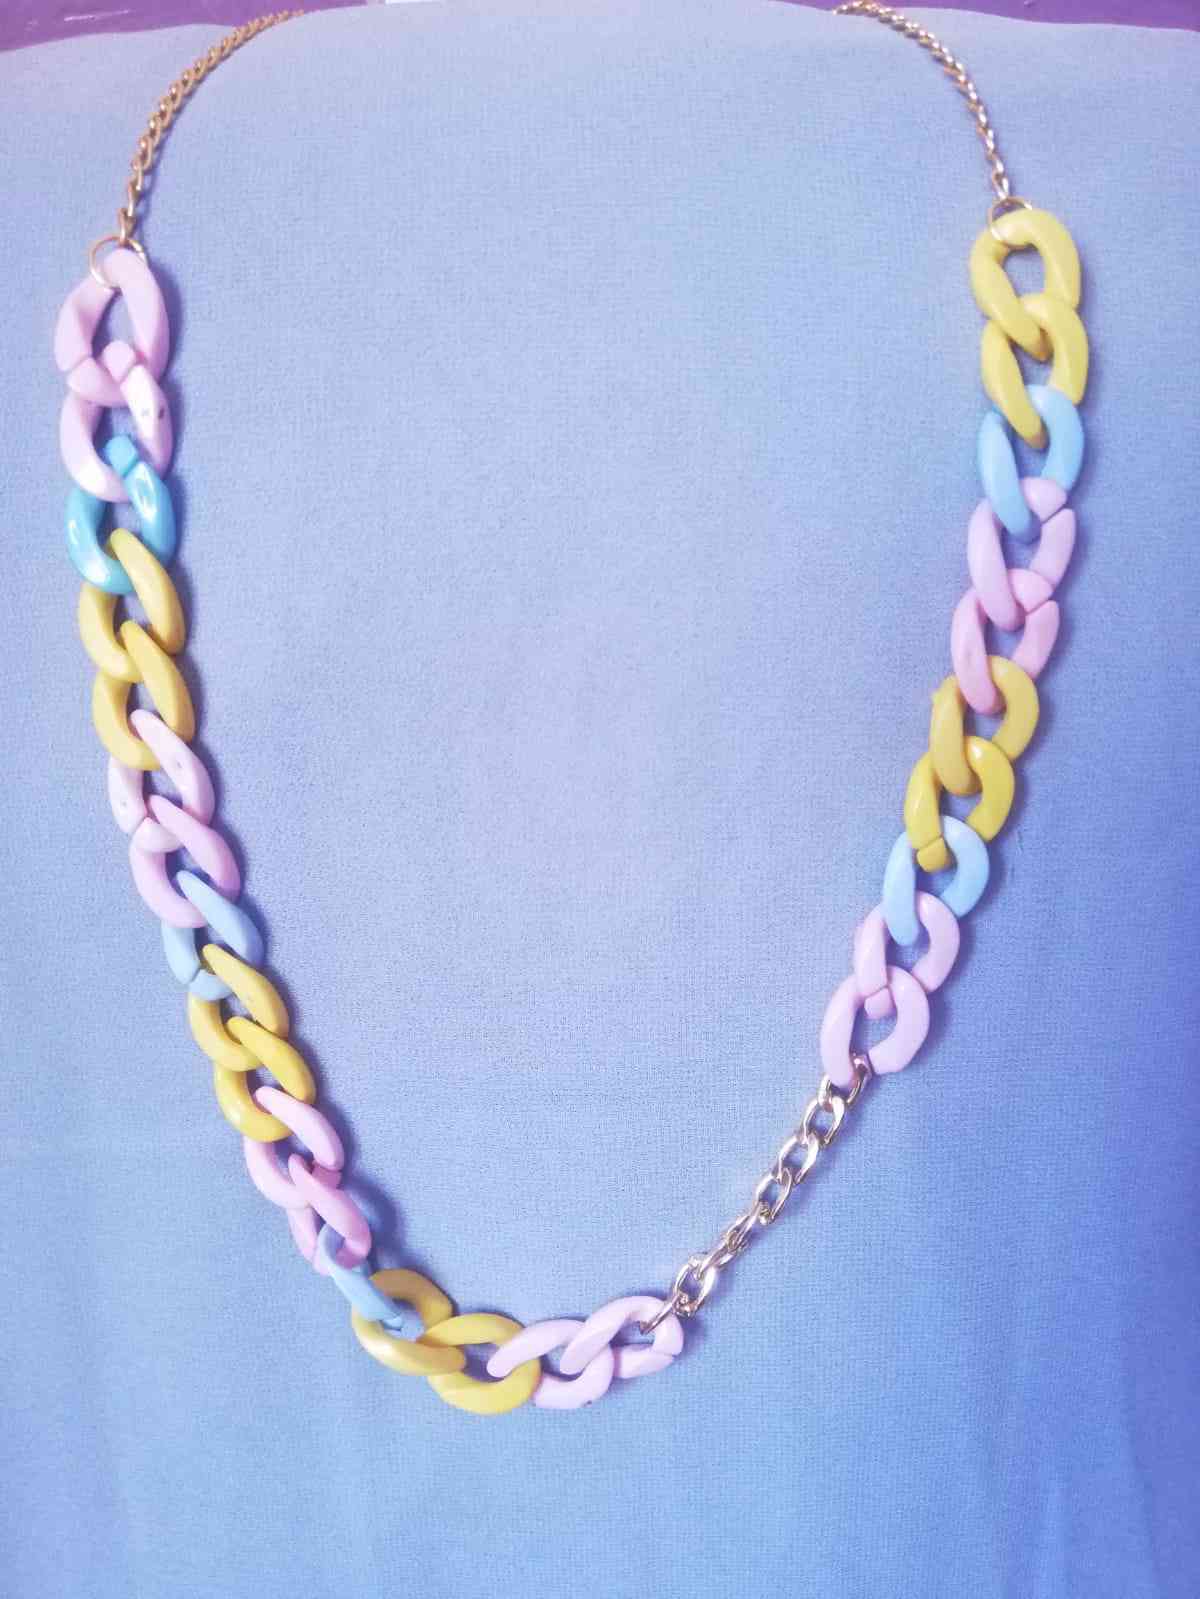 a necklace